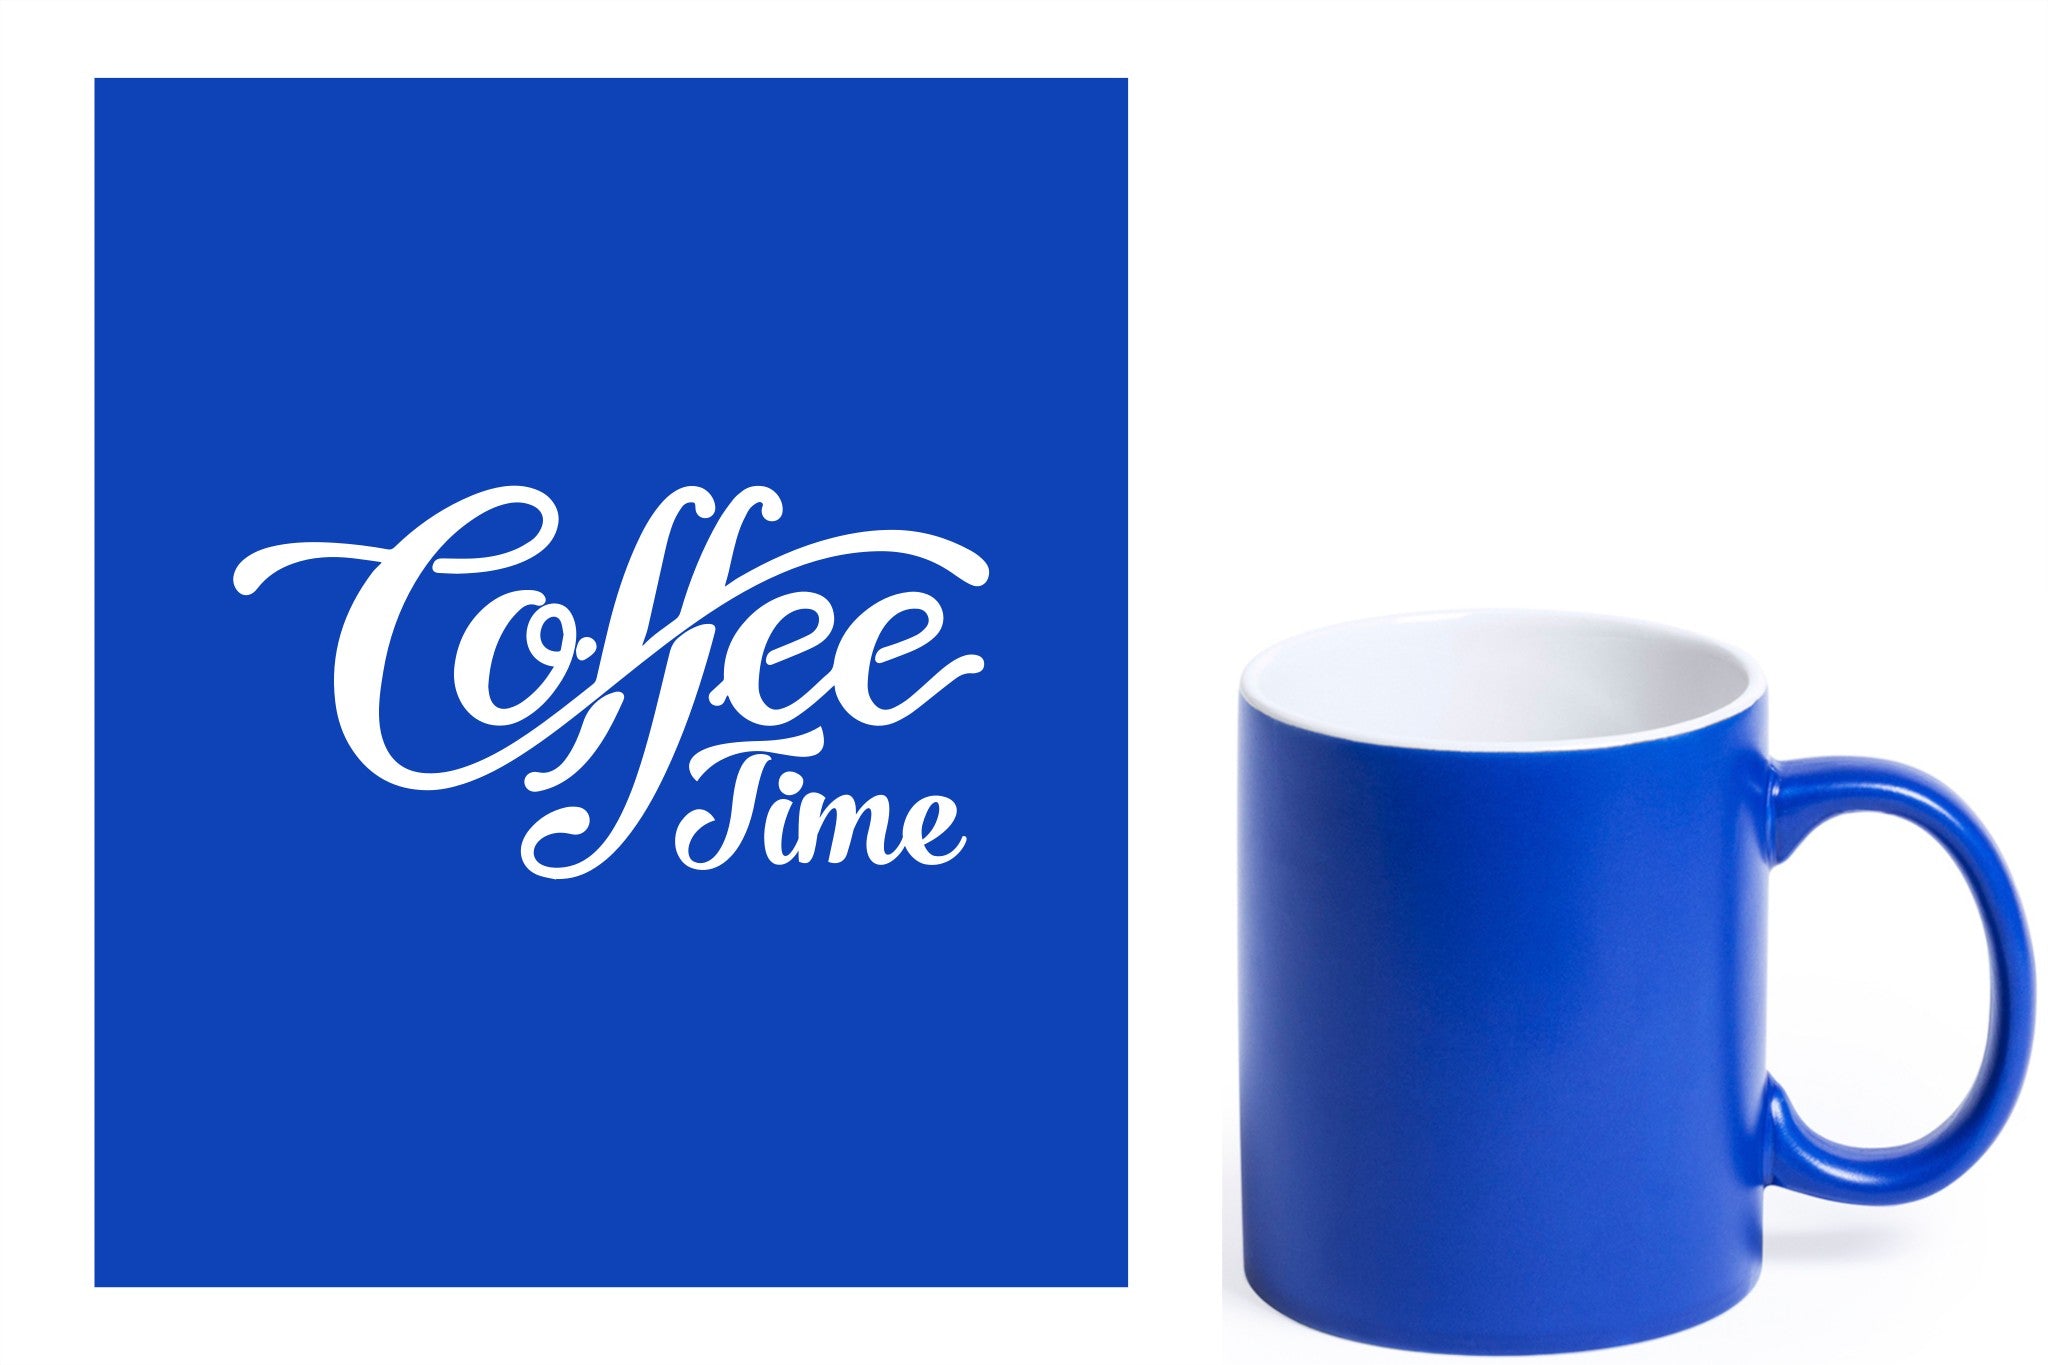 Blauwe keramische mok met witte gravure  'Coffee time'.